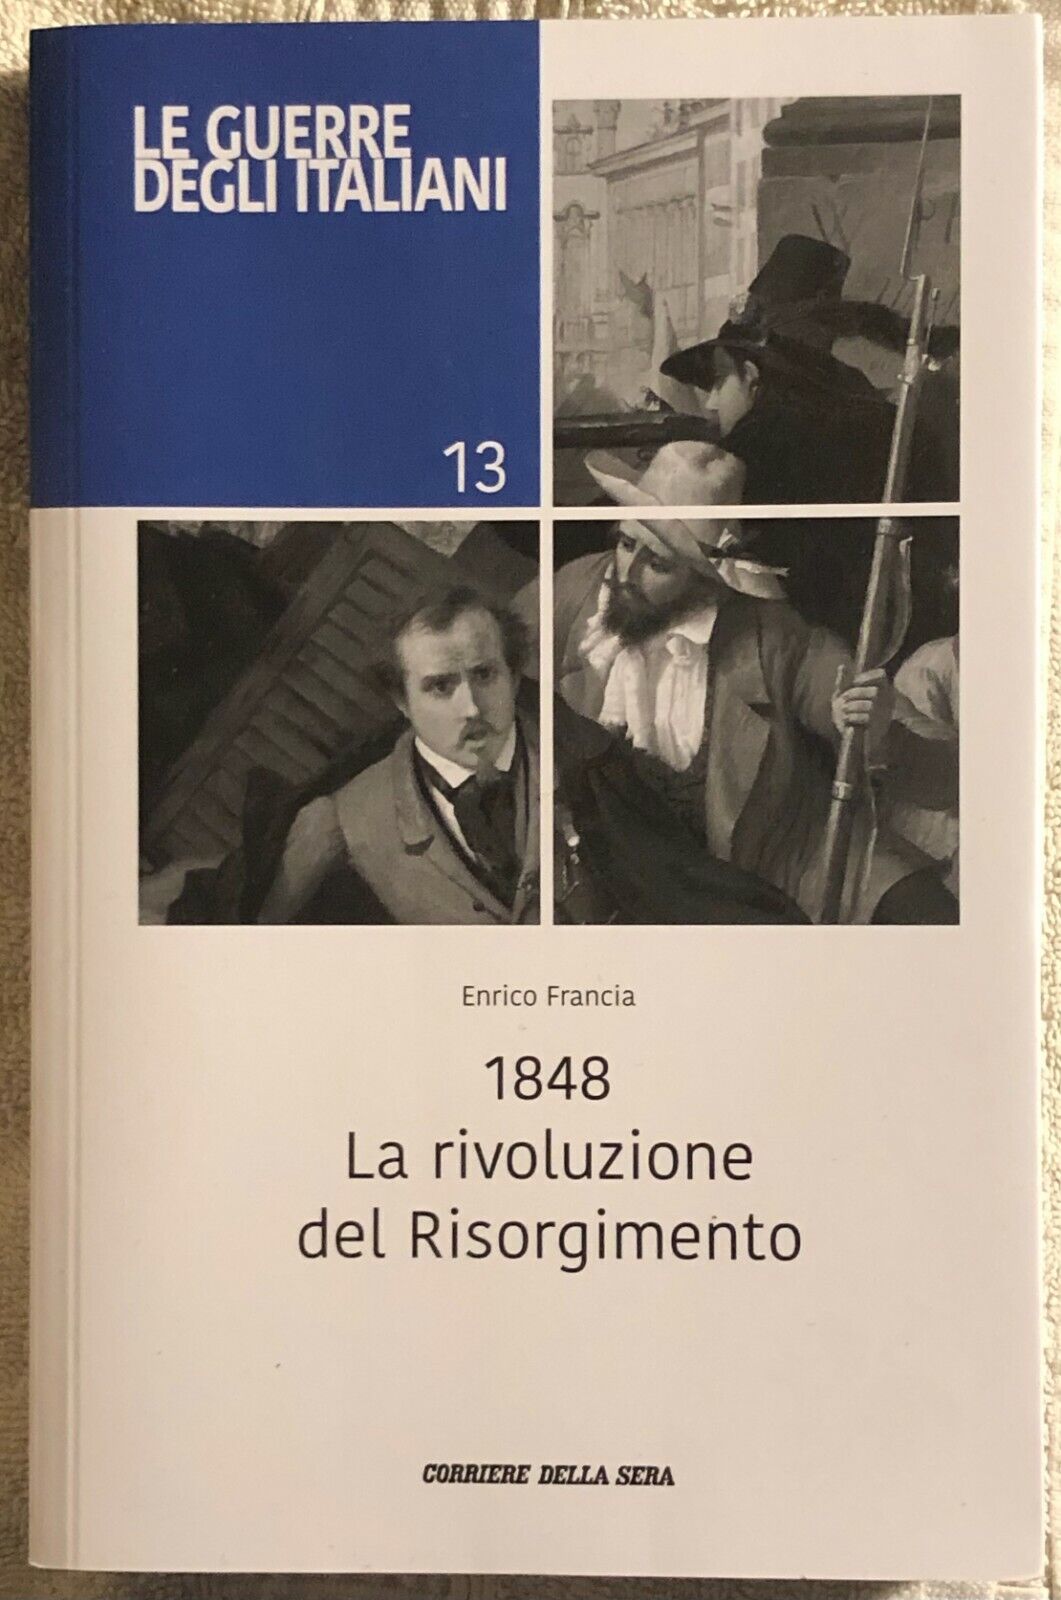 1848 La rivoluzione del Risorgimento Le guerre degli italiani 13 di Enrico Franc